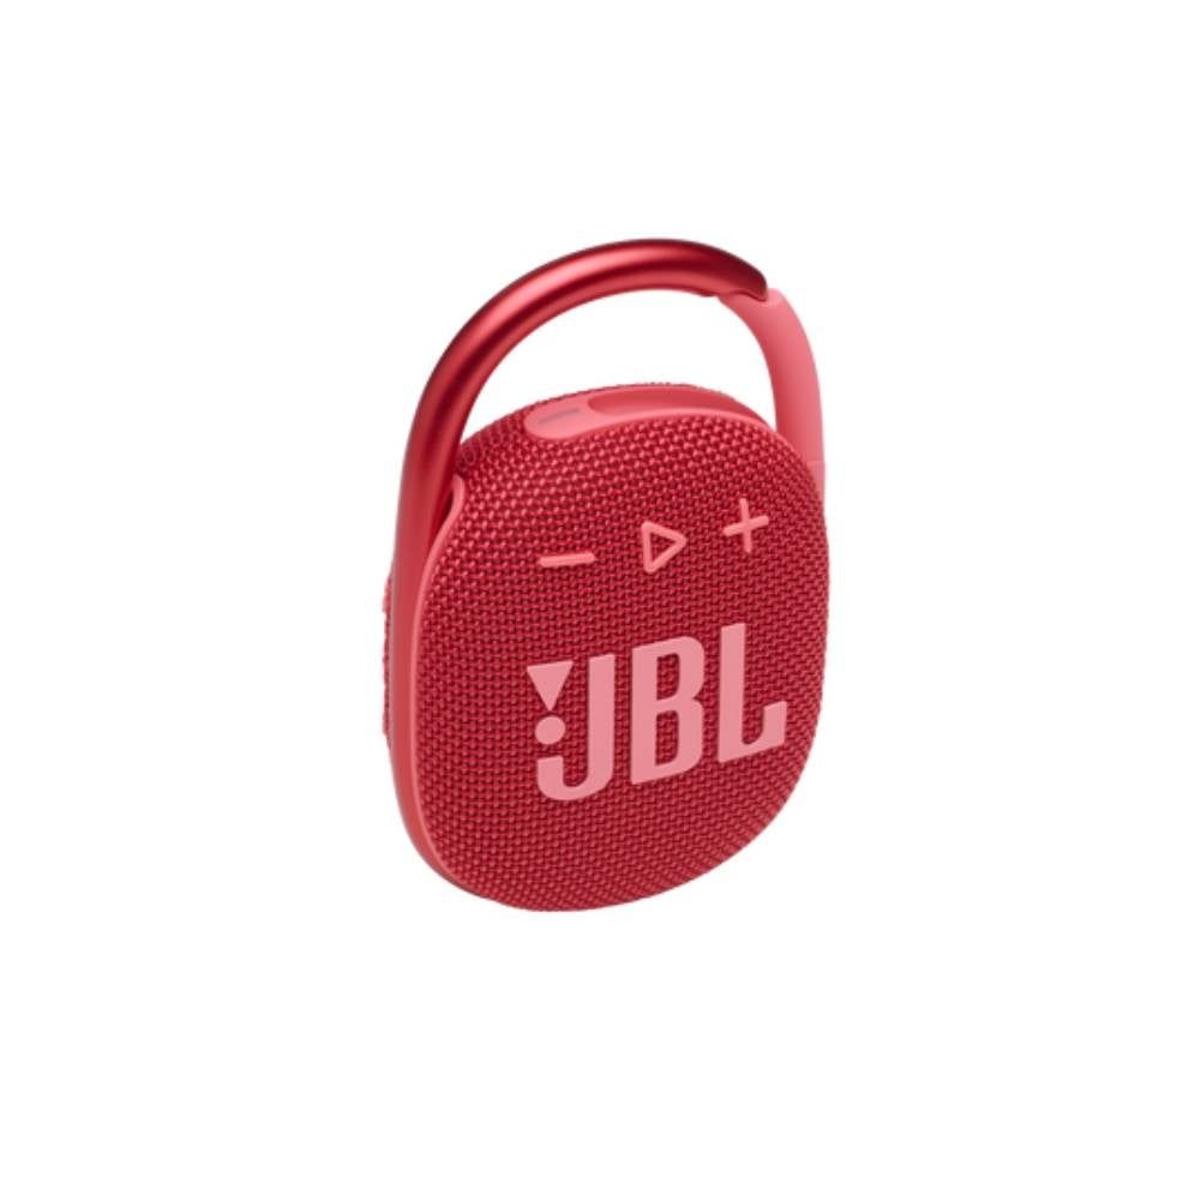 Altavoz portátil Clip 4, de JBL